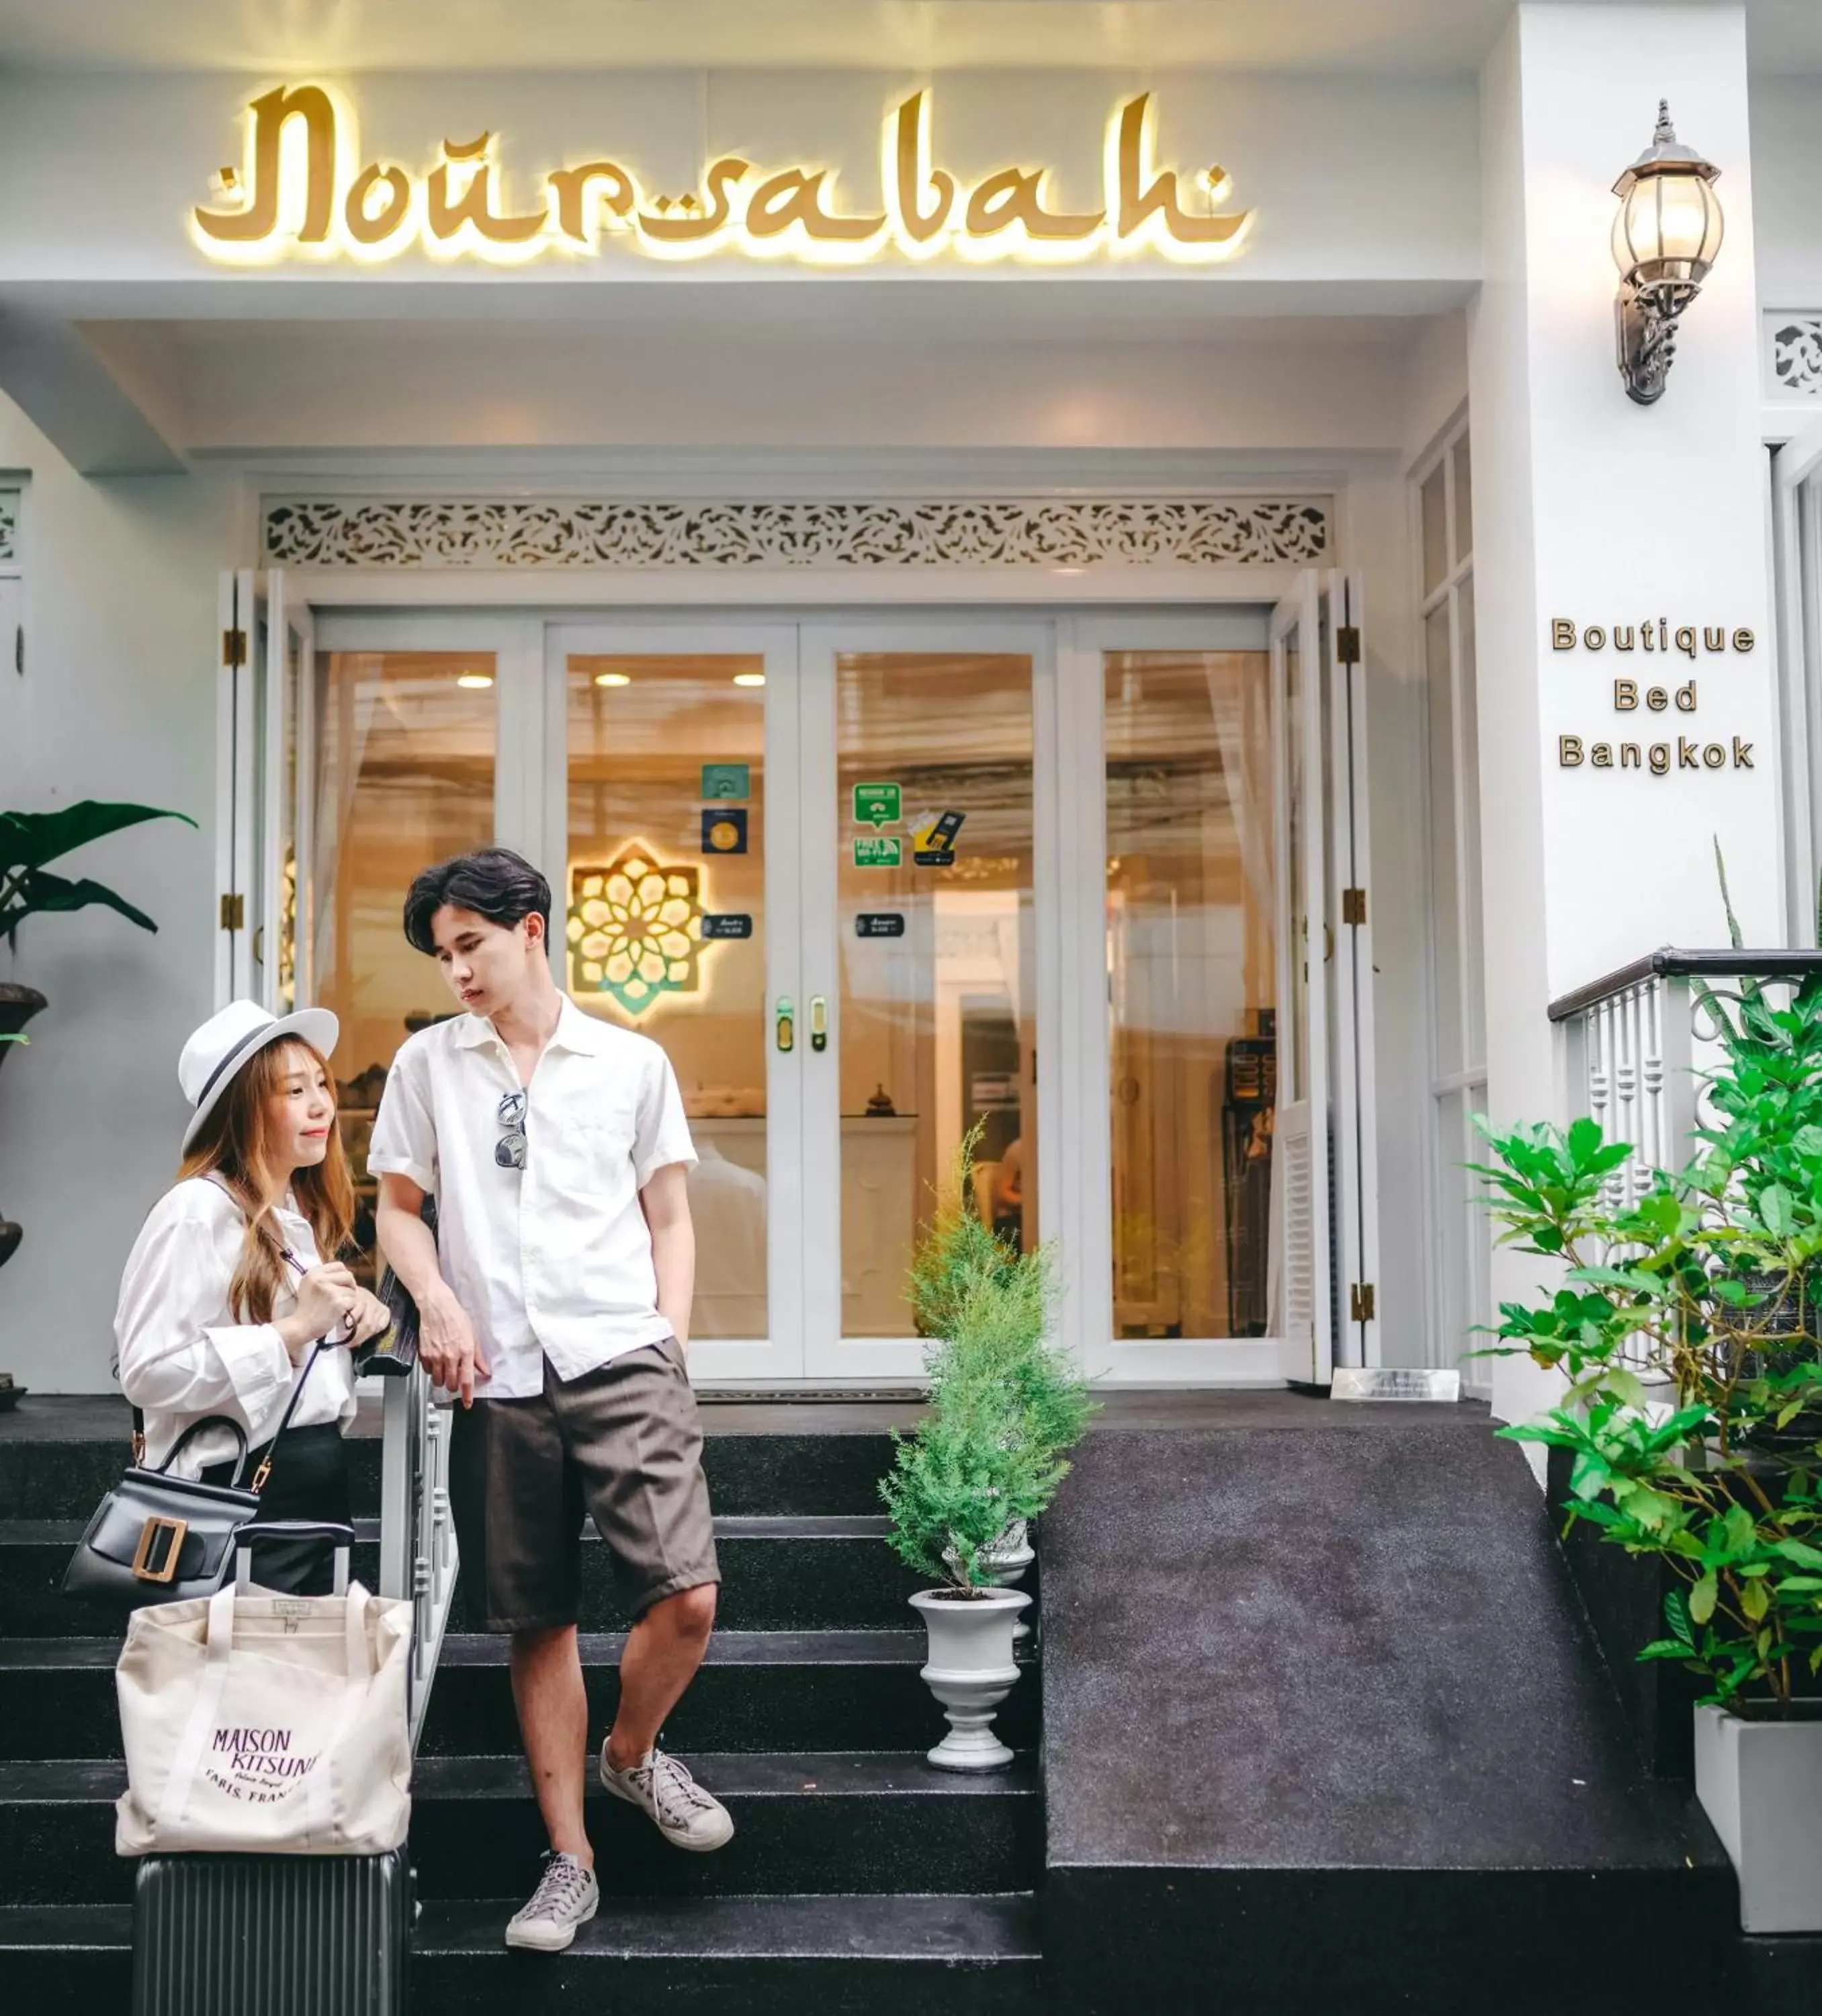 Facade/entrance in Noursabah Boutique Bed Bangkok